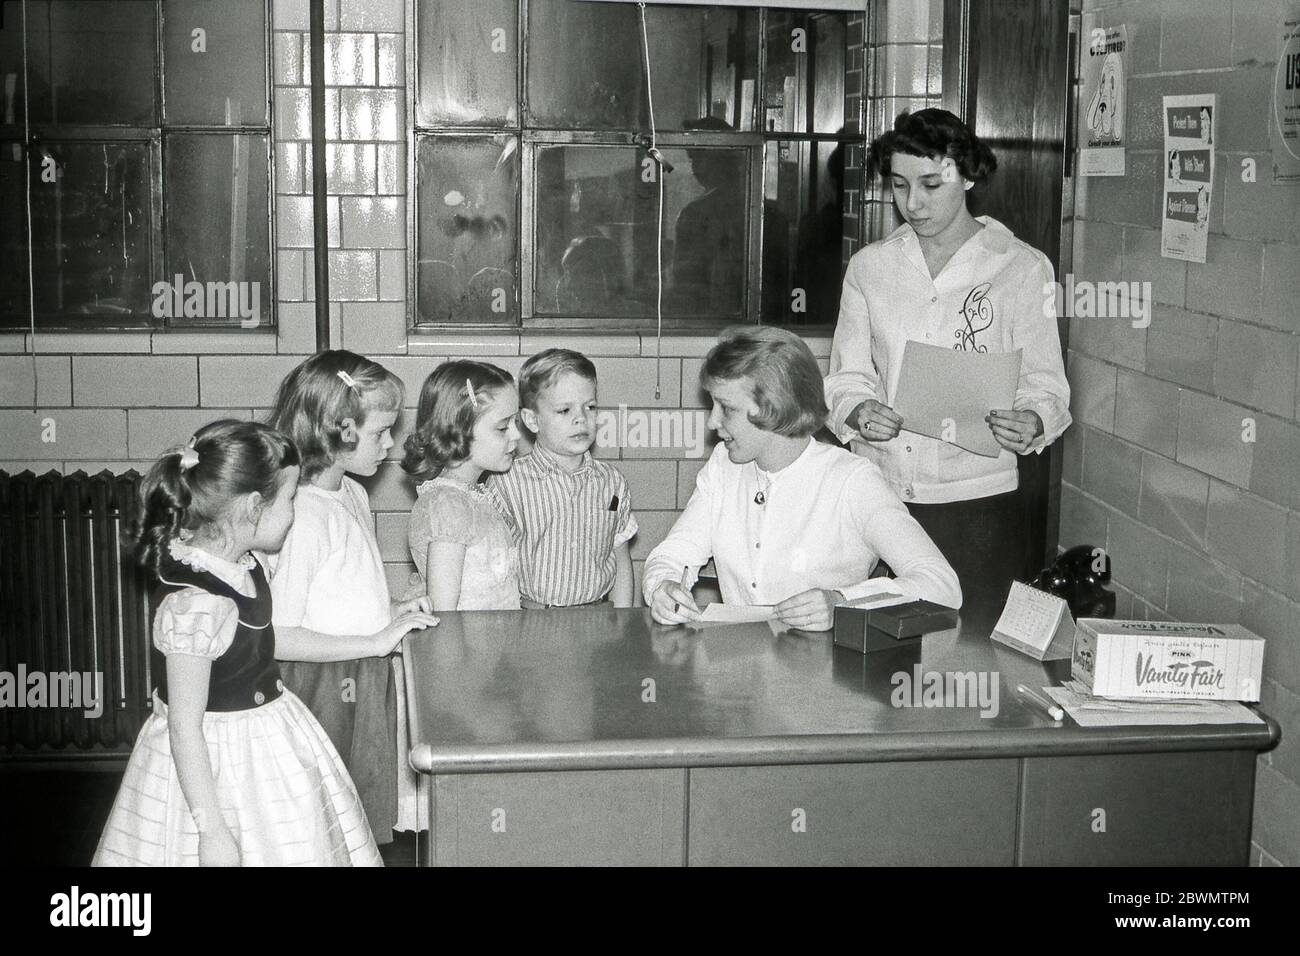 Educación en los EE.UU. En la década de 1950 – aquí en una oficina de azulejos una enfermera o visitante de salud está viendo y cuestionando a cuatro niños en la escuela primaria. Está utilizando un sistema de índice de tarjetas. En su escritorio hay un hisopo en un tubo de vidrio y una caja de pañuelos de papel. Hay carteles relacionados con la salud en la pared. Foto de stock